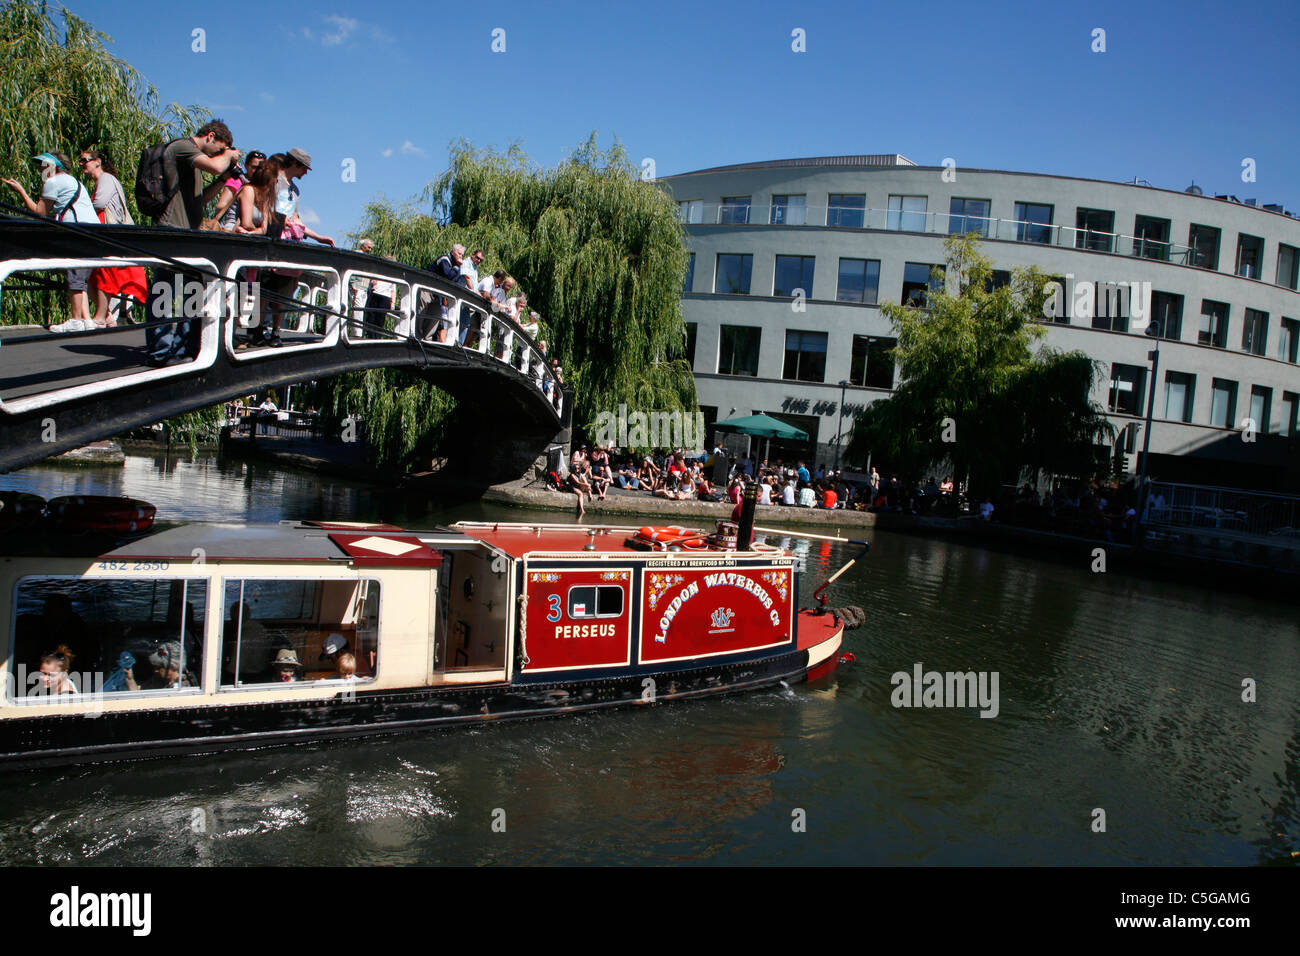 London-Wasserbus touristischen Vergnügungsschiff auf die Regents Canal in Camden Lock, Camden Town, London, UK Stockfoto